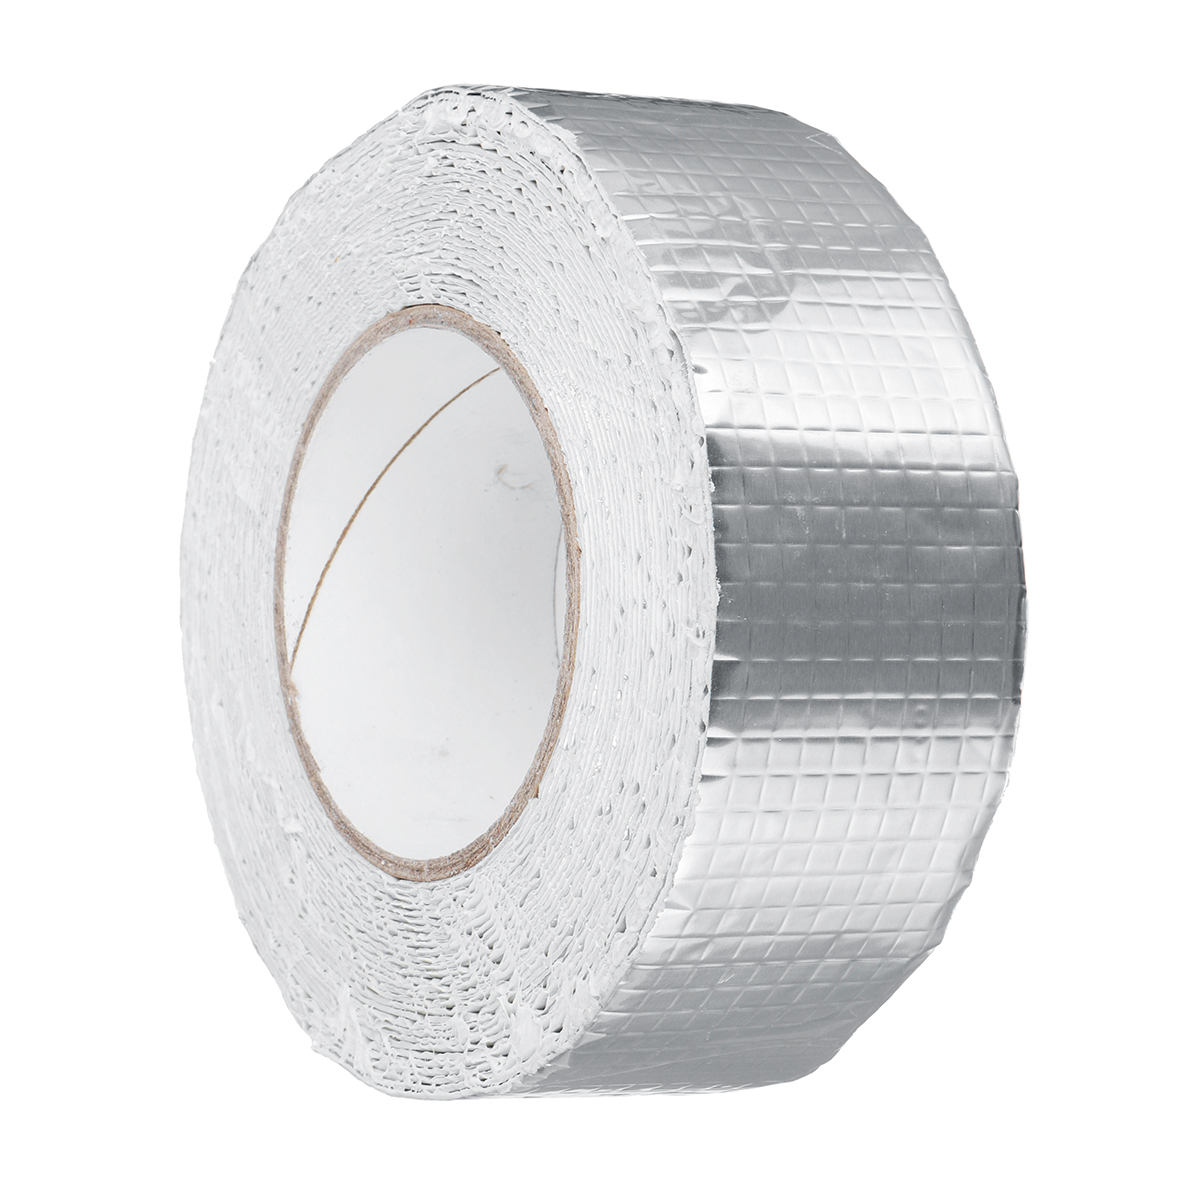 Aluminum-Foil-Butyl-Rubber-Tape-Self-Adhesive-Waterproof-Home-Roof-Pipe-Repair-Tape-1681292-5